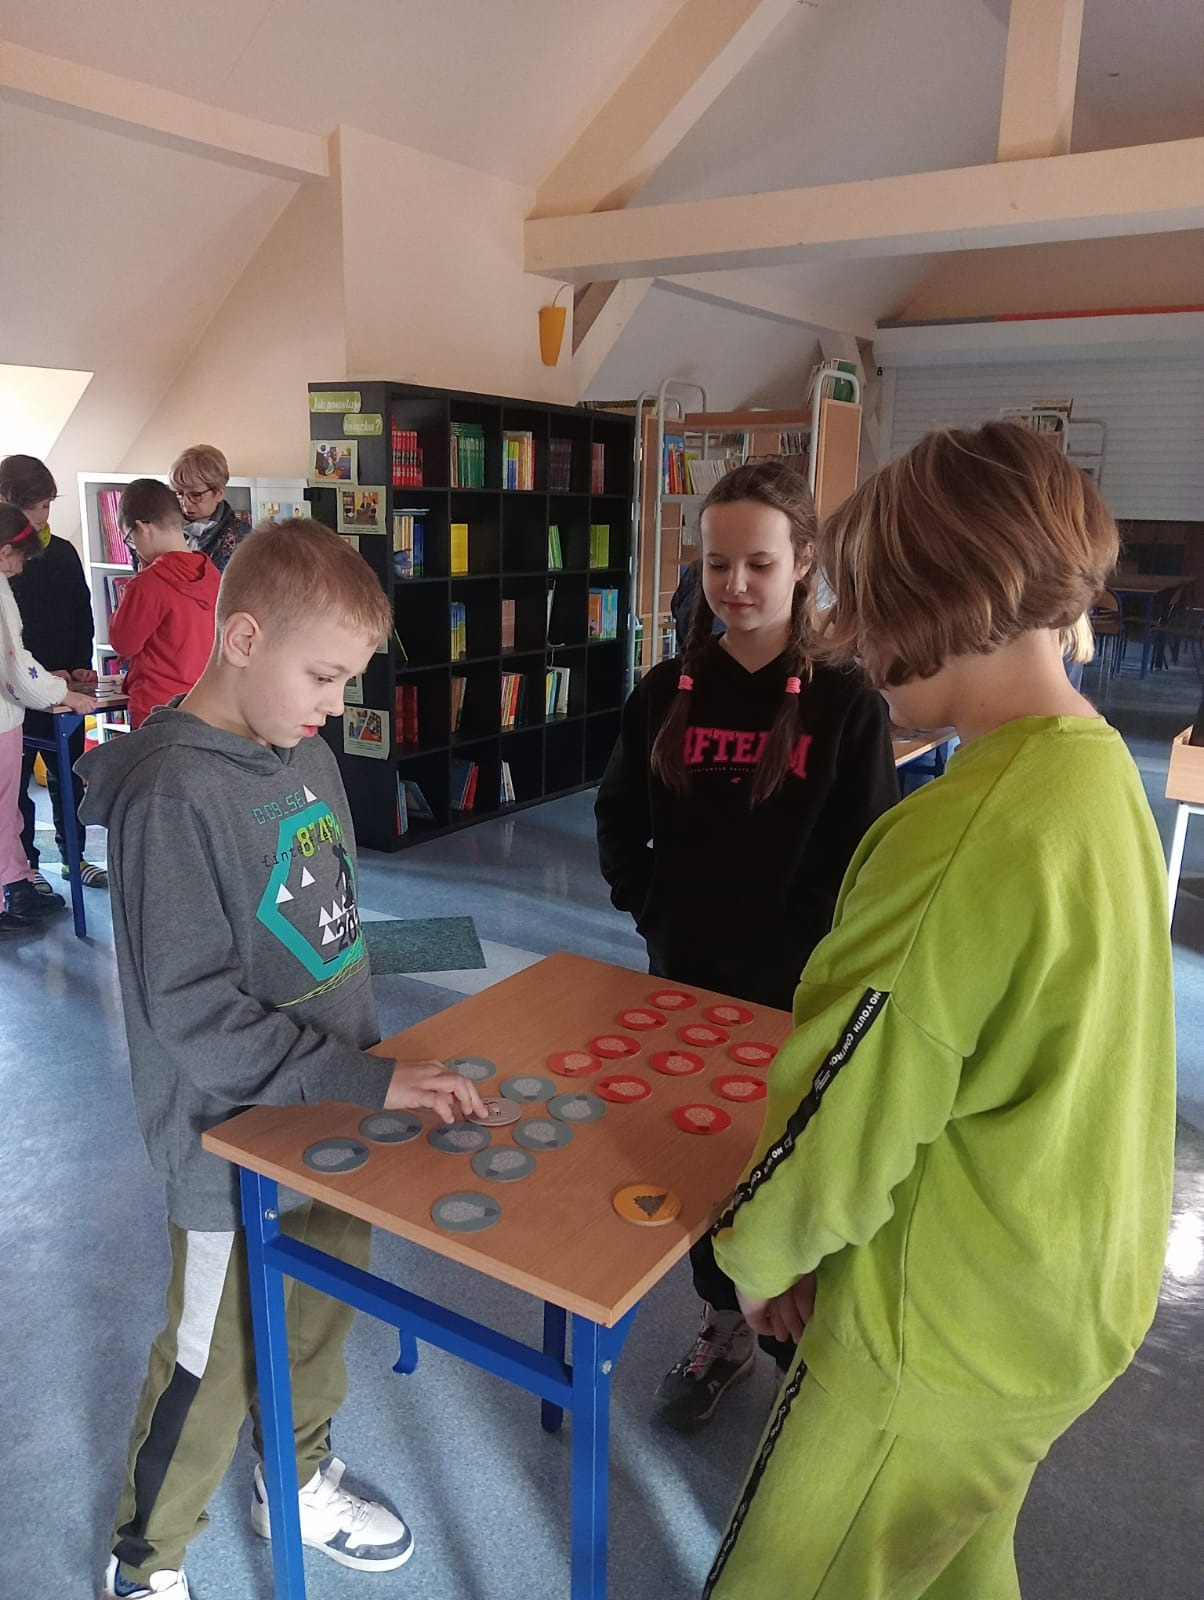 uczniowie grają w grę w bibliotece szkolnej